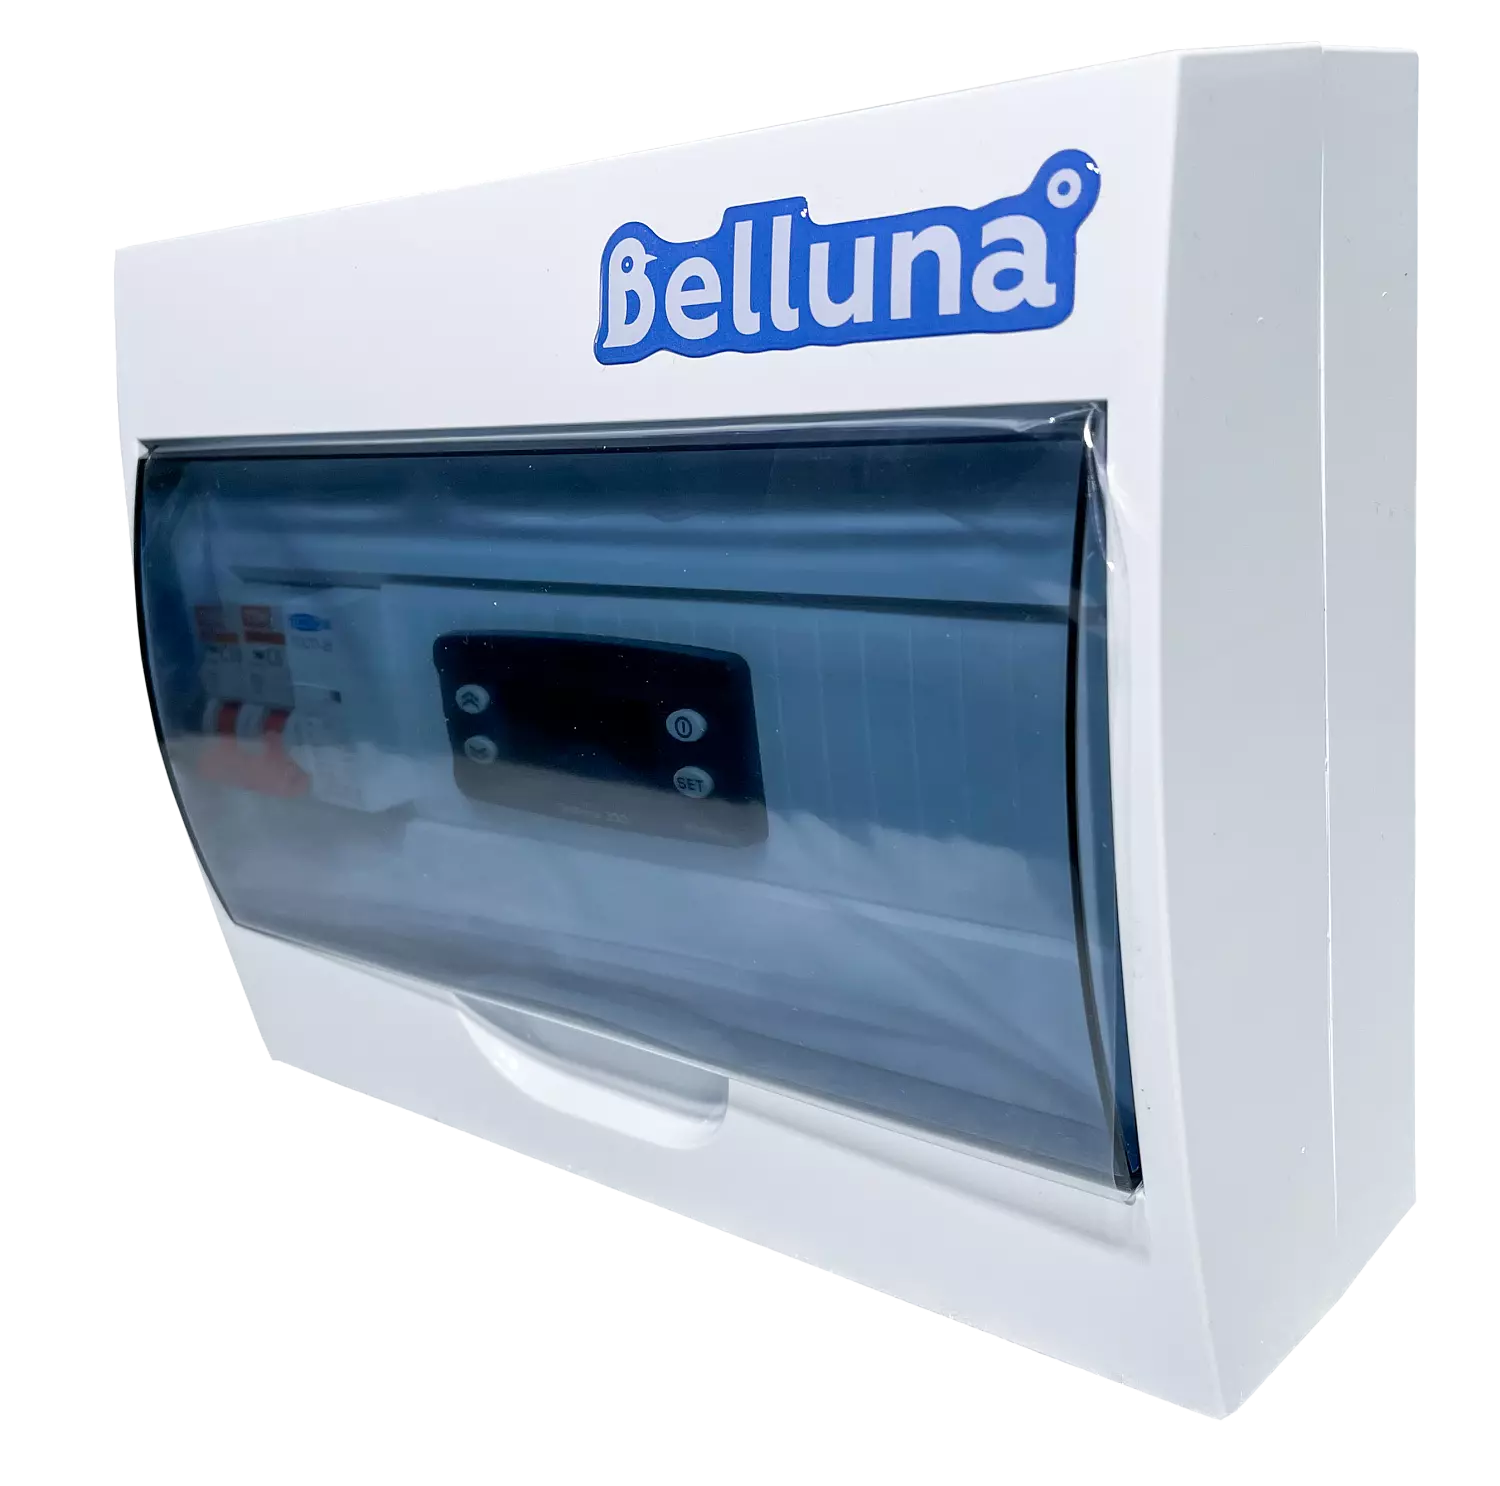 сплит-система Belluna S342 Волгоград